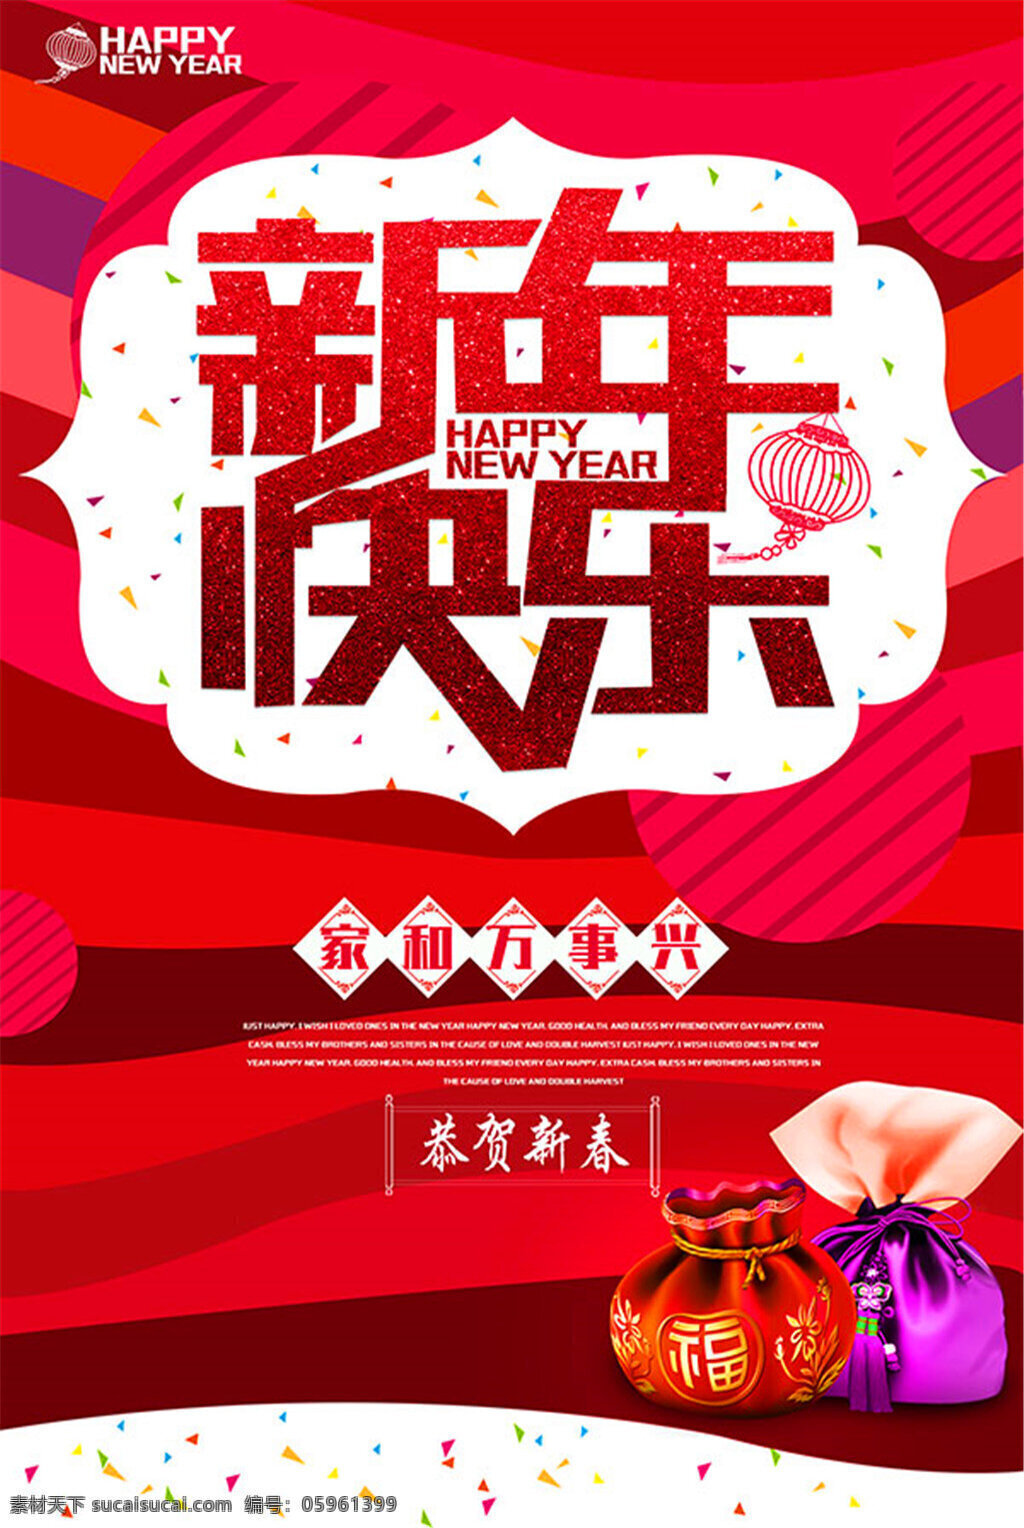 喜庆新年海报 新年海报 新年宣传 新年快乐 家和万事兴 红色喜庆背景 恭贺新春